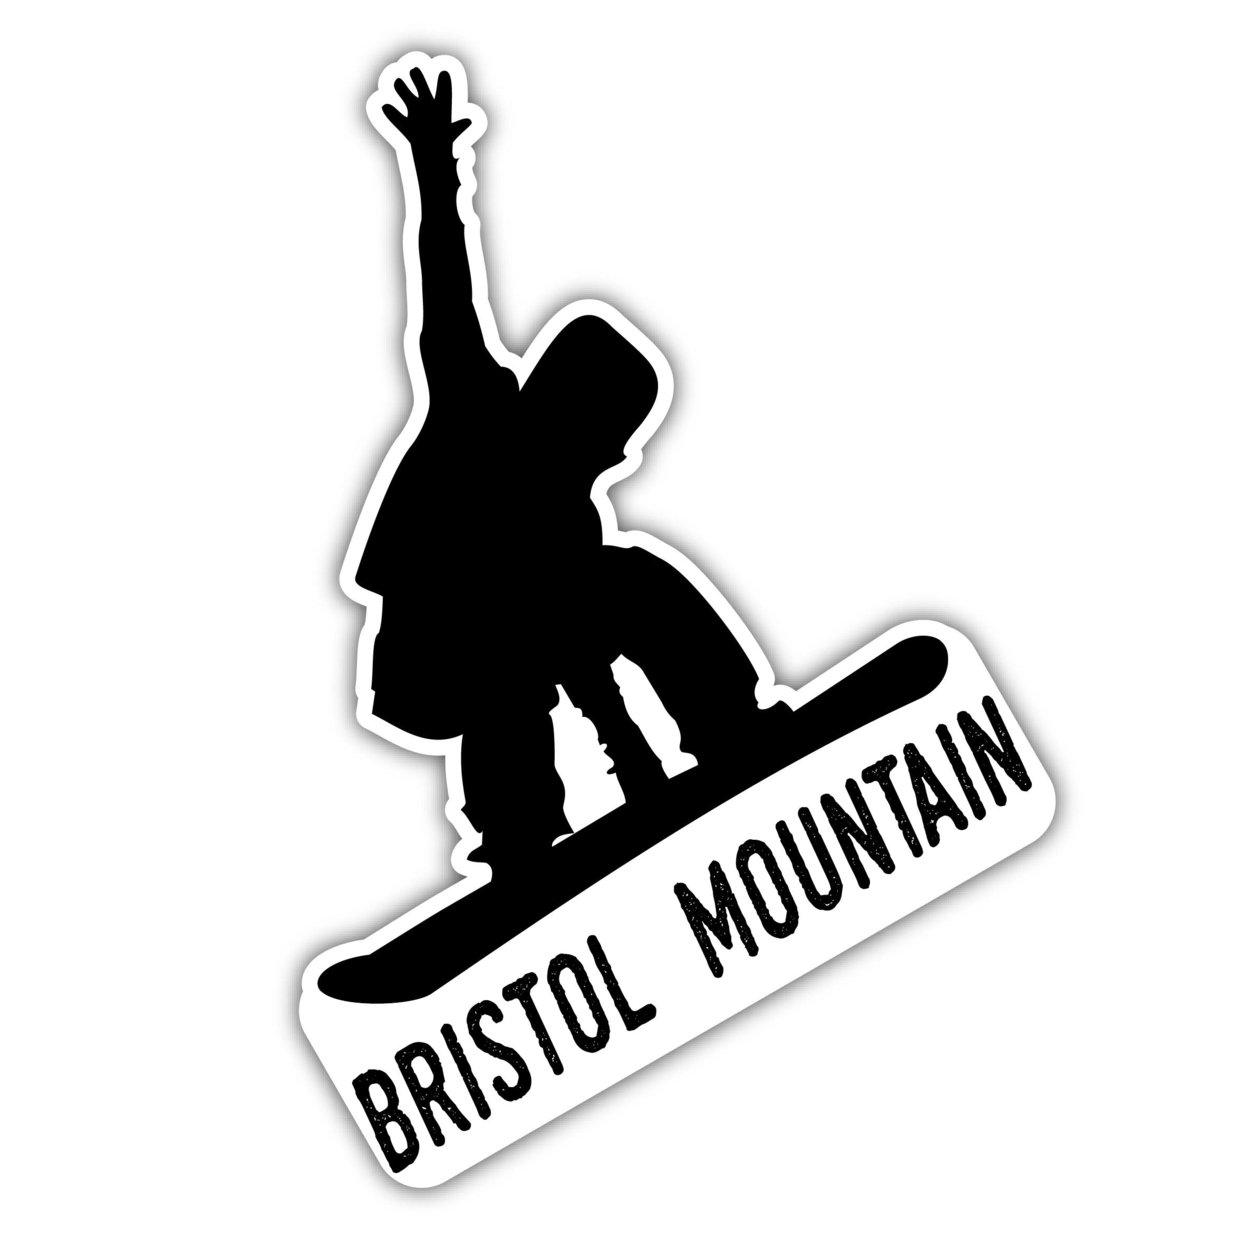 Bristol Mountain New York Ski Adventures Souvenir 4 Inch Vinyl Decal Sticker Board Design